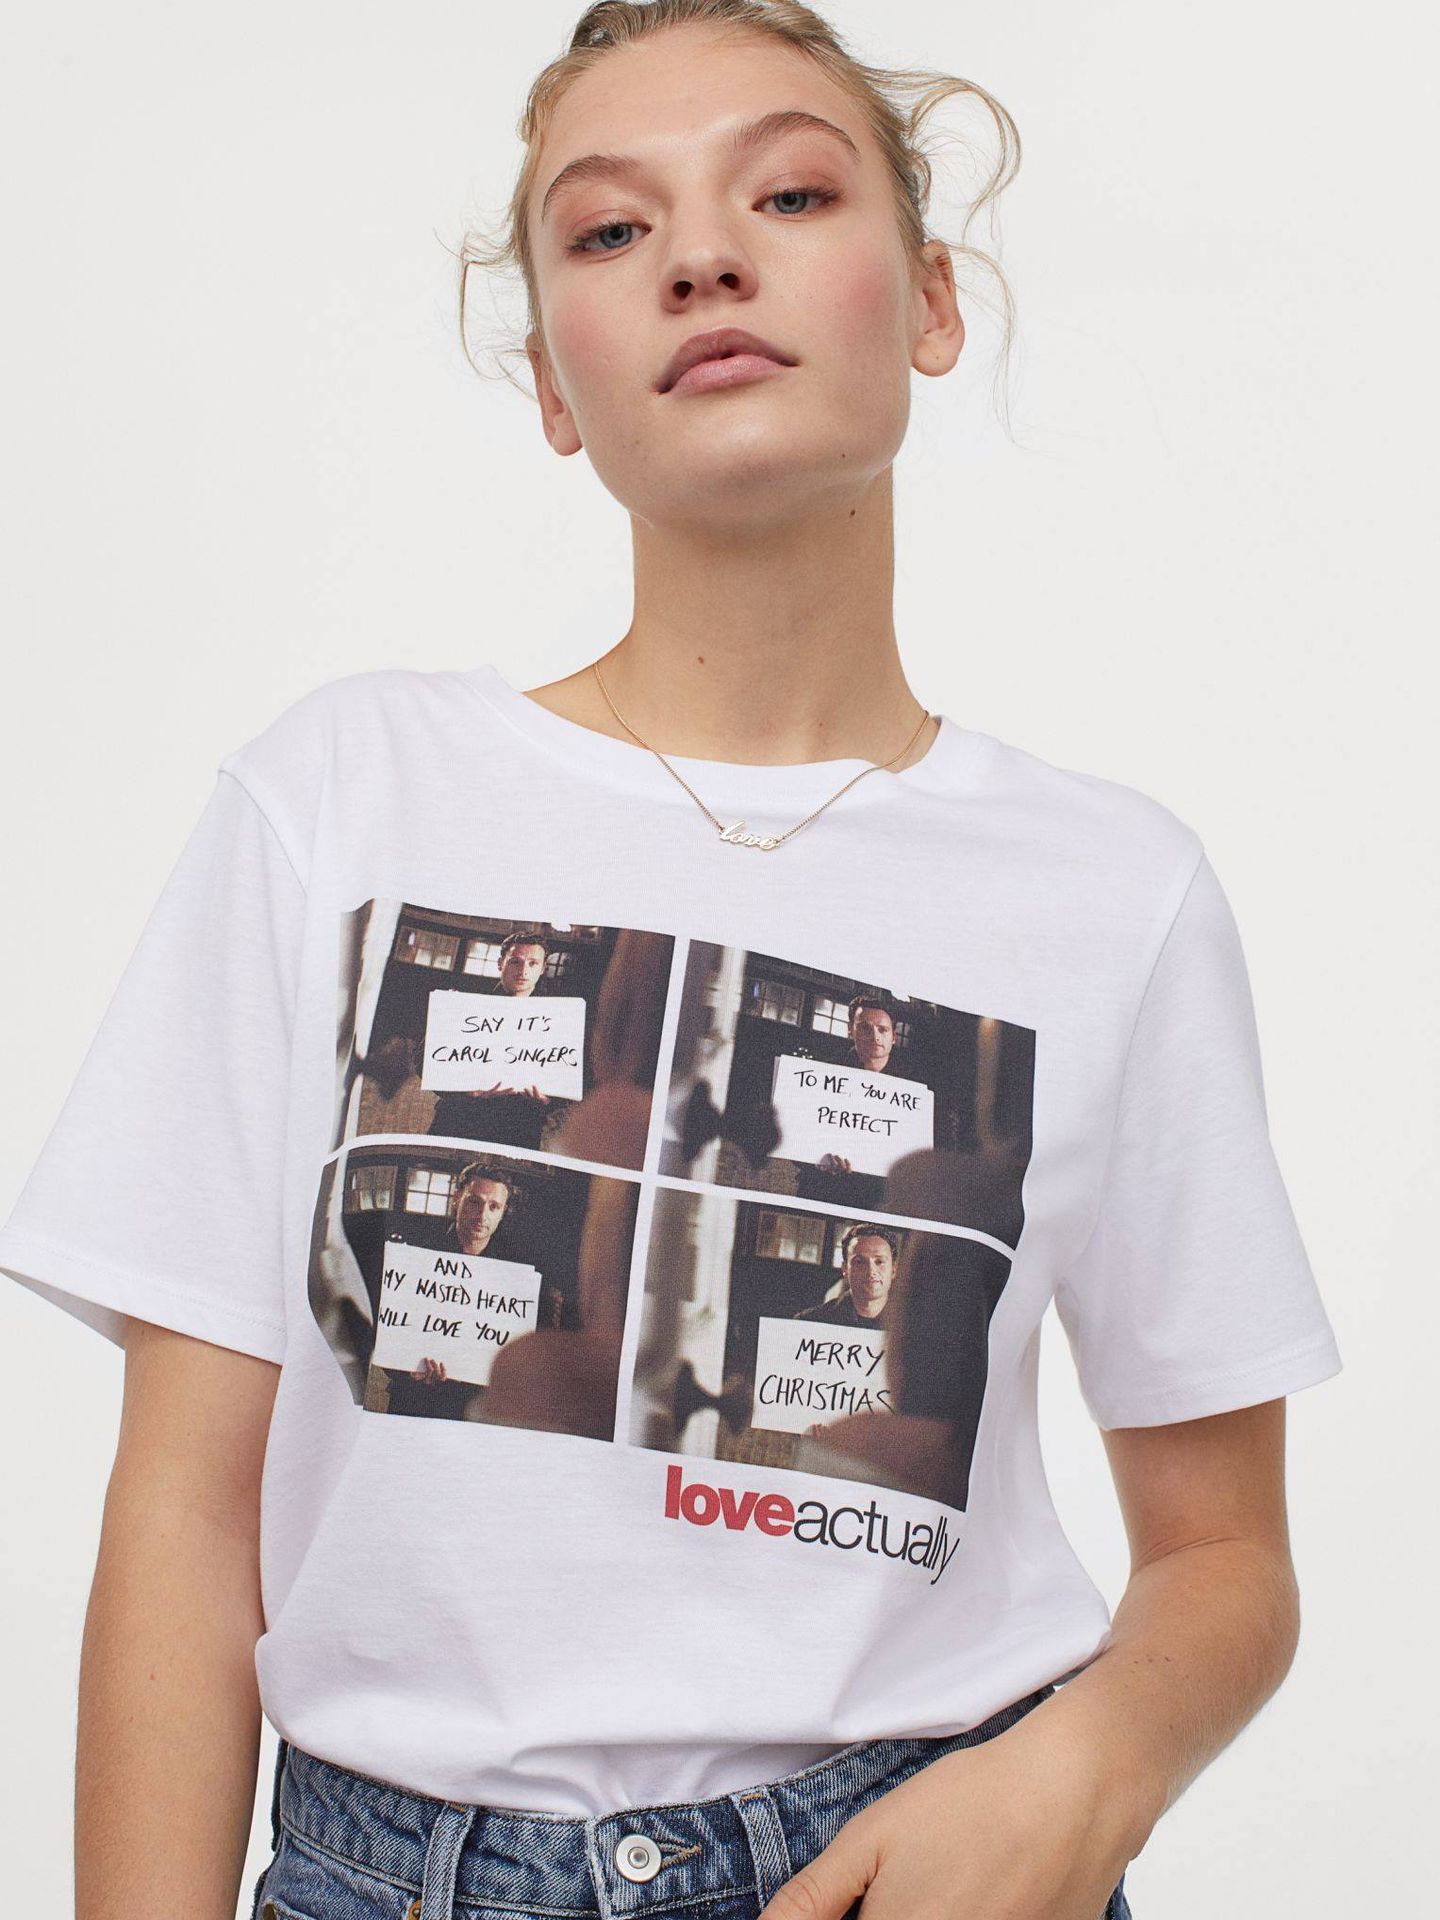 Camiseta de HyM de 10 euros de 'Love Actually'. (Cortesía)